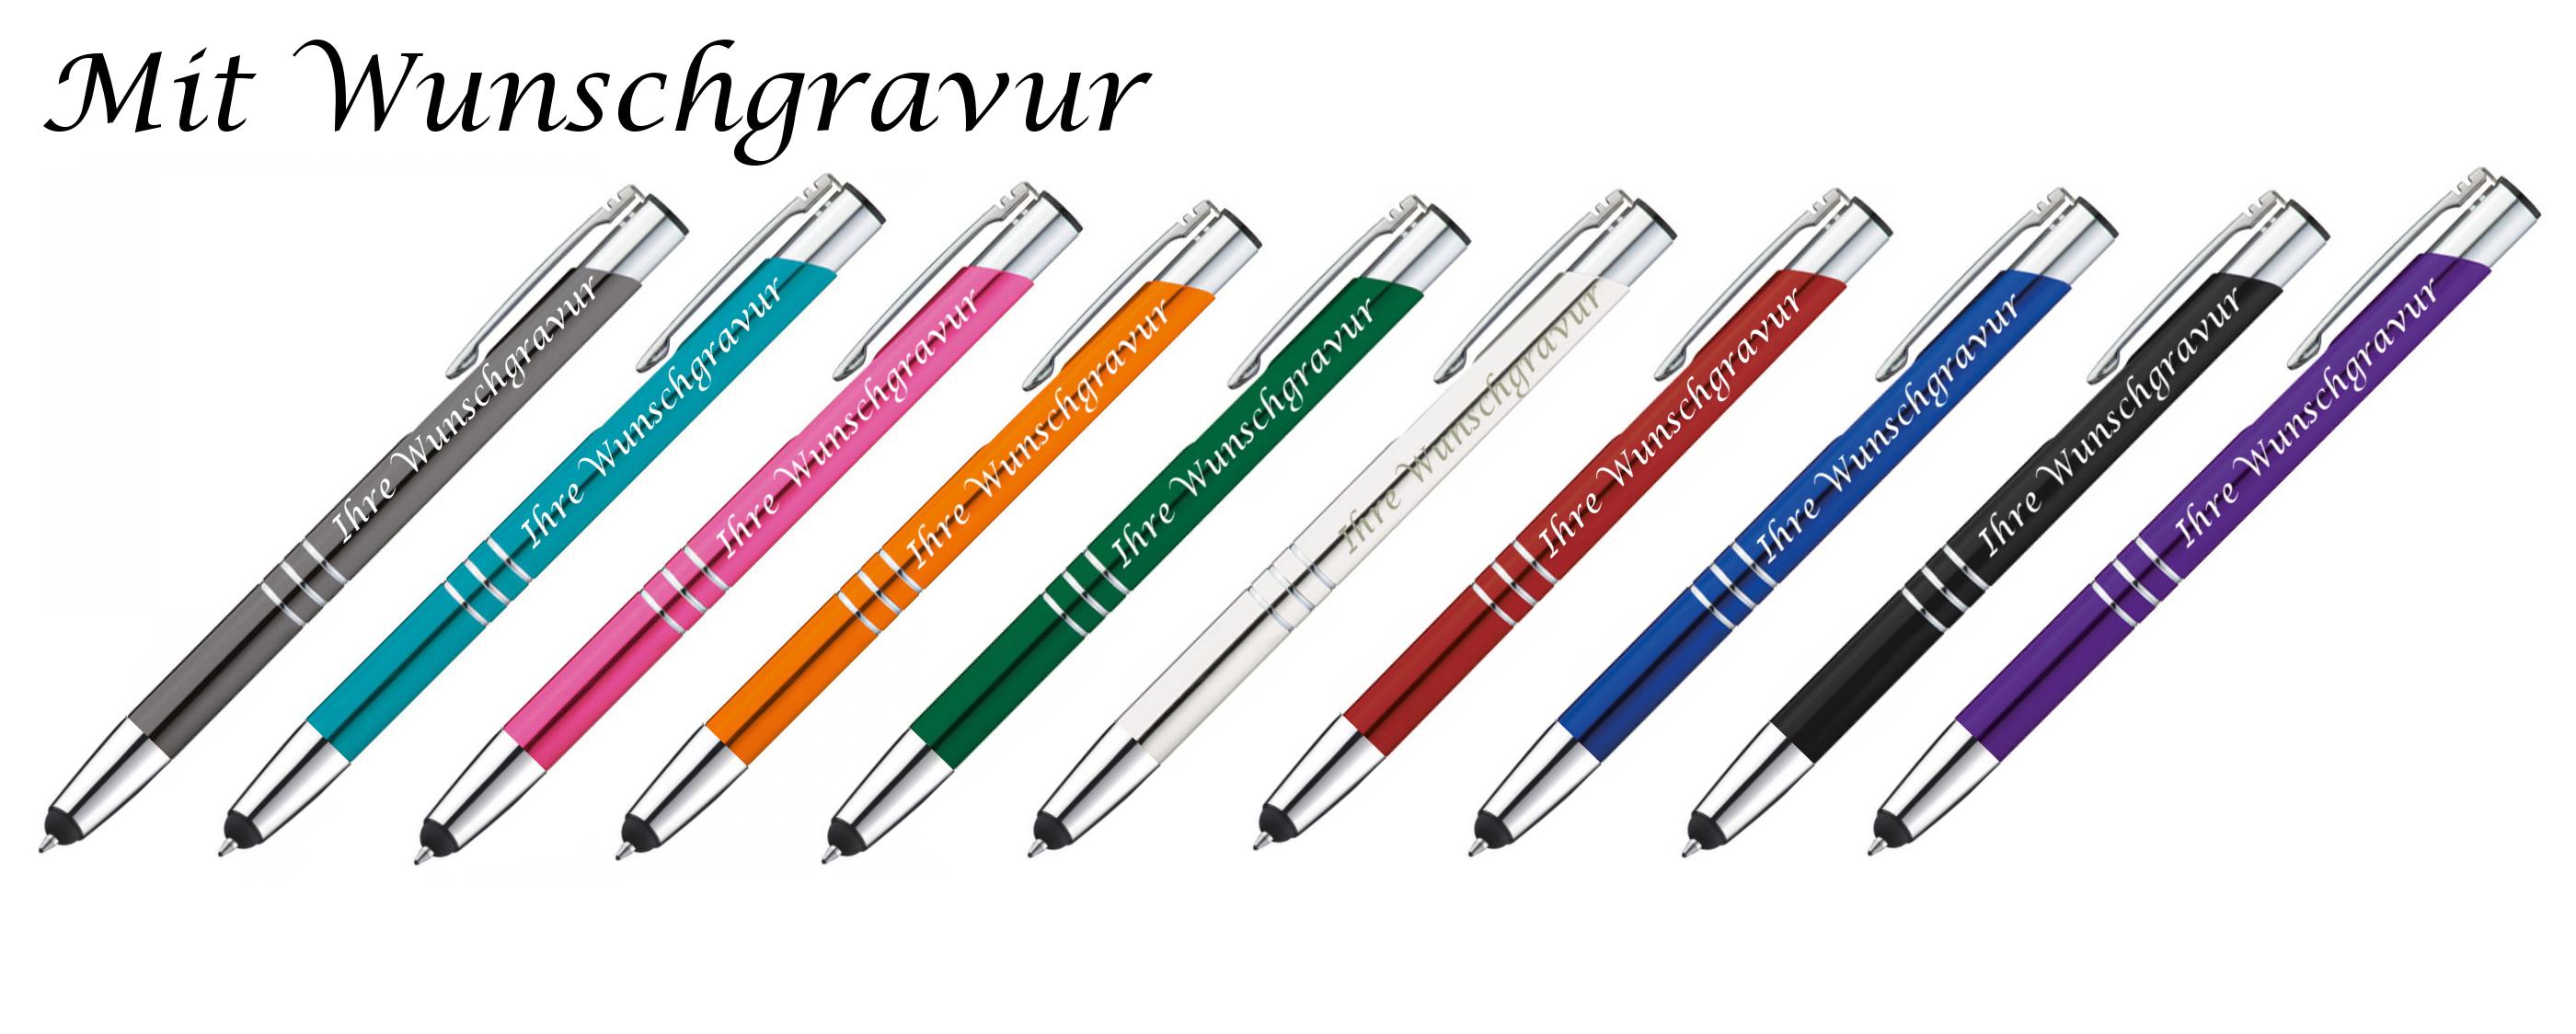 10 verschiedene Farben 10 Touchpen Kugelschreiber aus Metall mit Gravur 